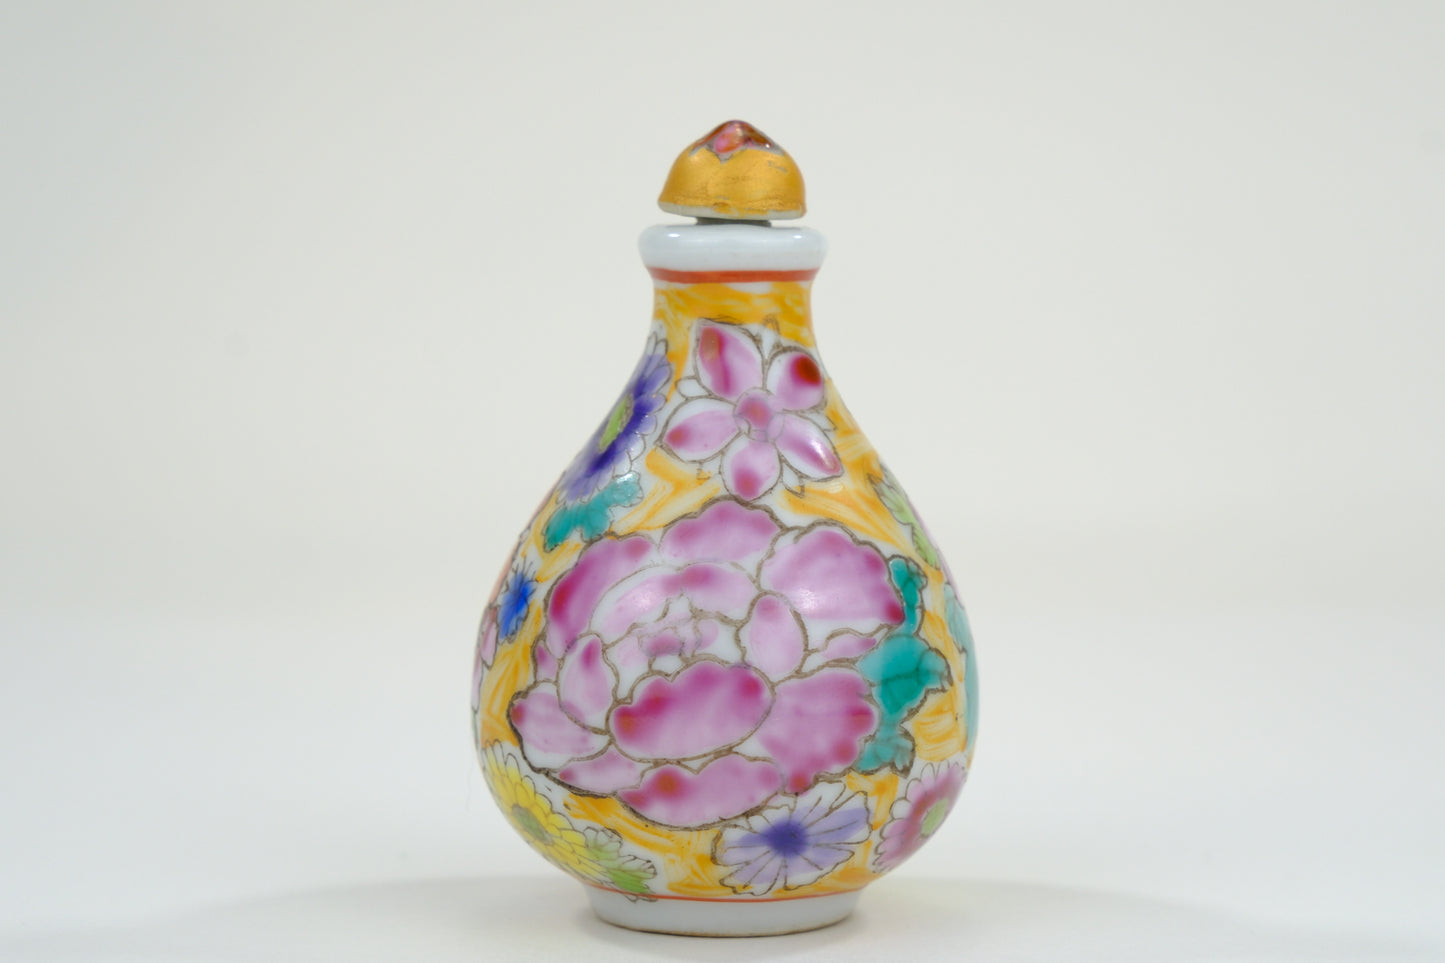 Vintage Chinese Porcelain Floral Motif Snuff Bottle 3"